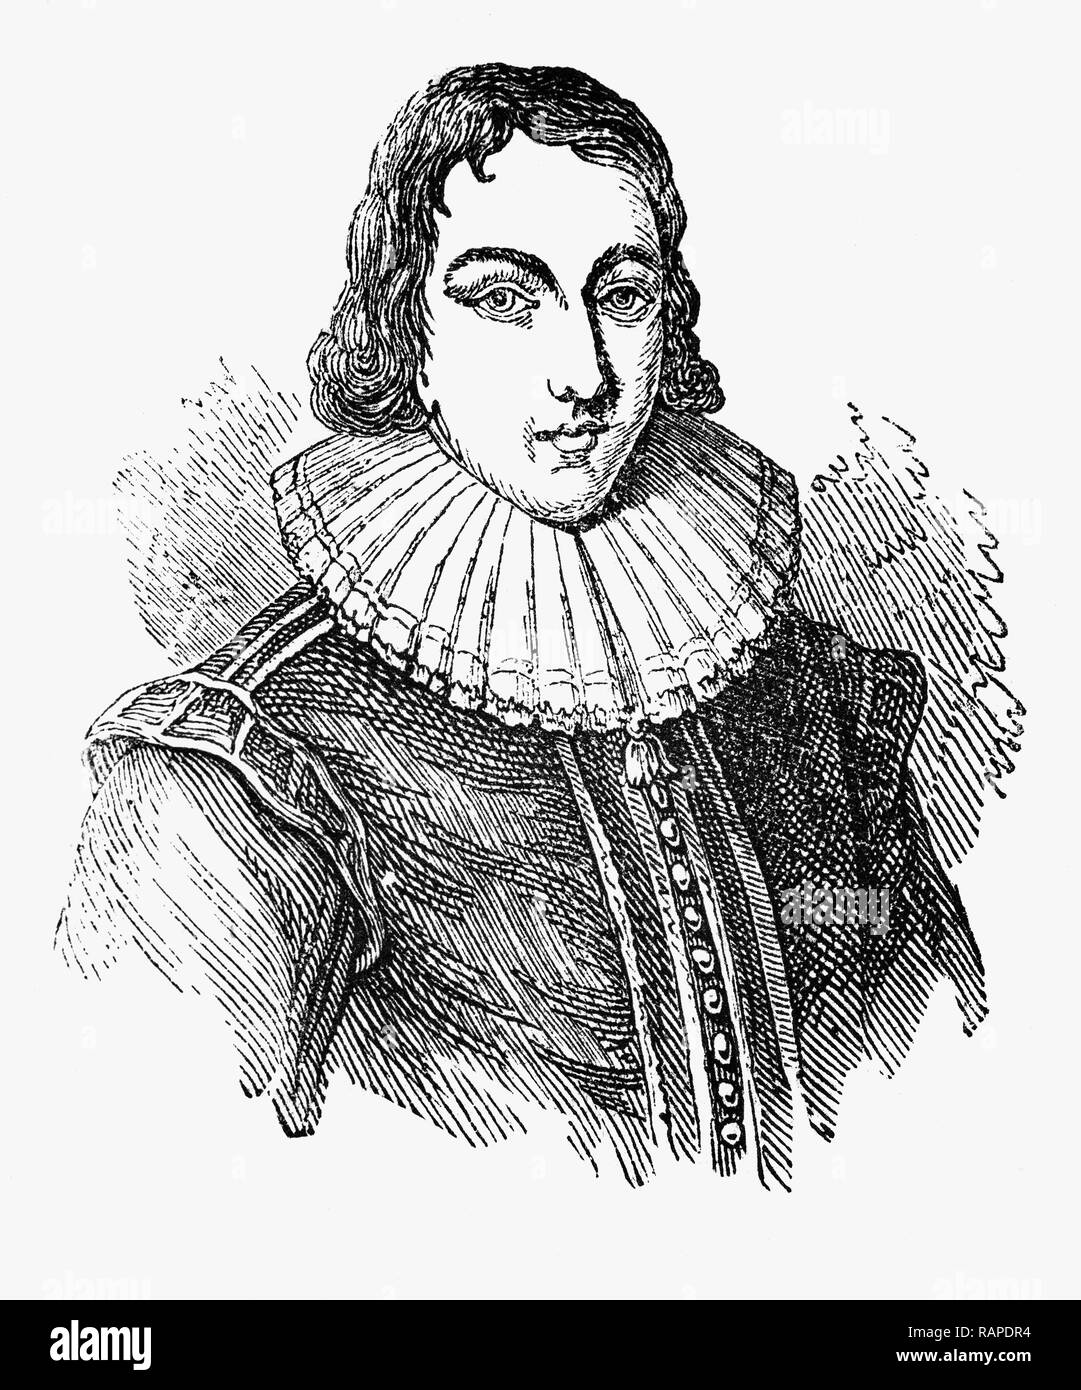 John Milton (1608-1674), im Alter von 19, wurde ein englischer Dichter, Polemiker, Literaten und Beamten für den Commonwealth von England unter dem Rat der Staats- und später unter Oliver Cromwell. Er schrieb in einer Zeit des religiösen Strömungen und politische Unruhen, und ist am besten für seine epischen Gedicht Paradies verloren (1667), leere Vers geschrieben. Stockfoto